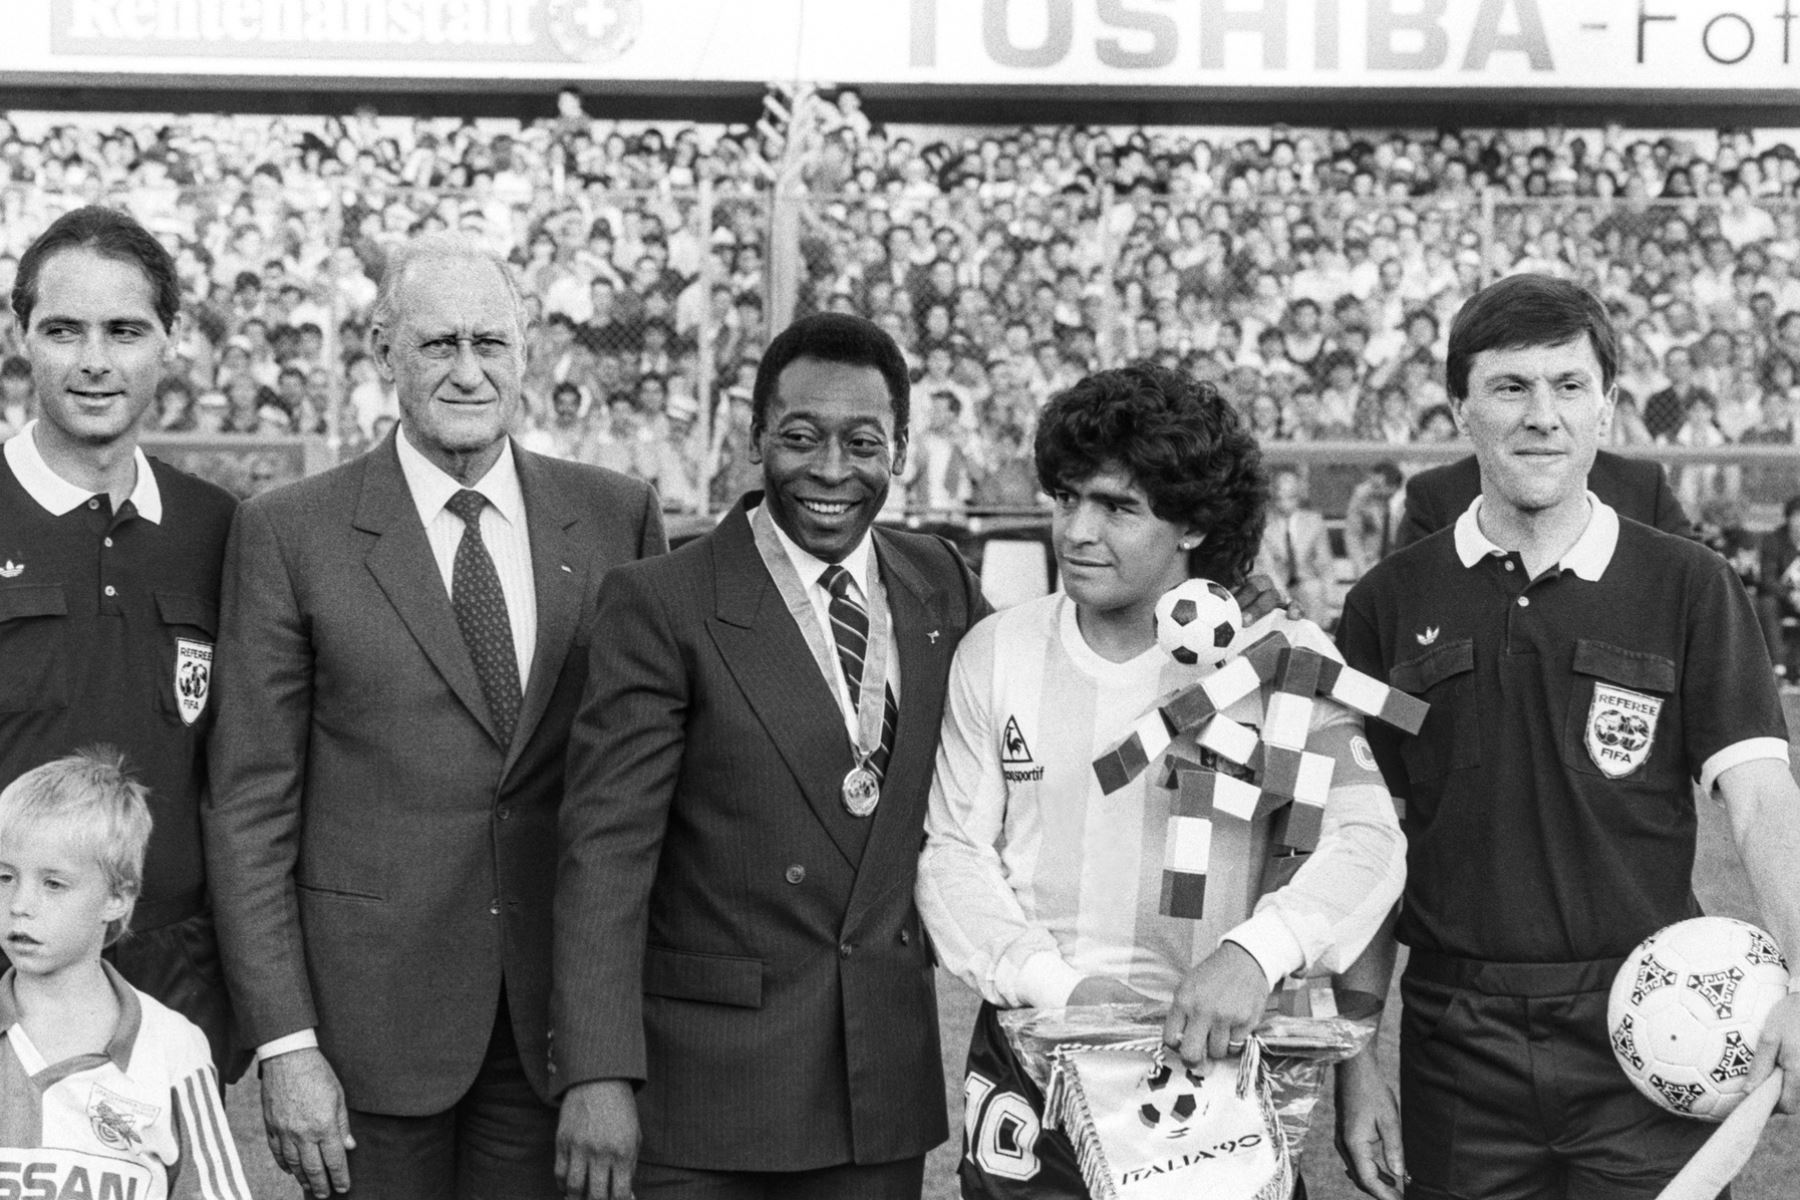 La leyenda del fútbol brasileño Pelé (centro), la leyenda del fútbol argentino Diego Maradona (2-R) y el presidente de la FIFA Joao Havelange (2-L) durante el partido entre Italia y Argentina en Zúrich, Suiza, el 10 de junio de 1987 (reeditado el 29 de diciembre de 2022). Según su agente, Pelé, cuyo nombre propio es Edson Arantes do Nascimento, ha fallecido el 28 de diciembre de 2022 a los 82 años. Foto: EFE